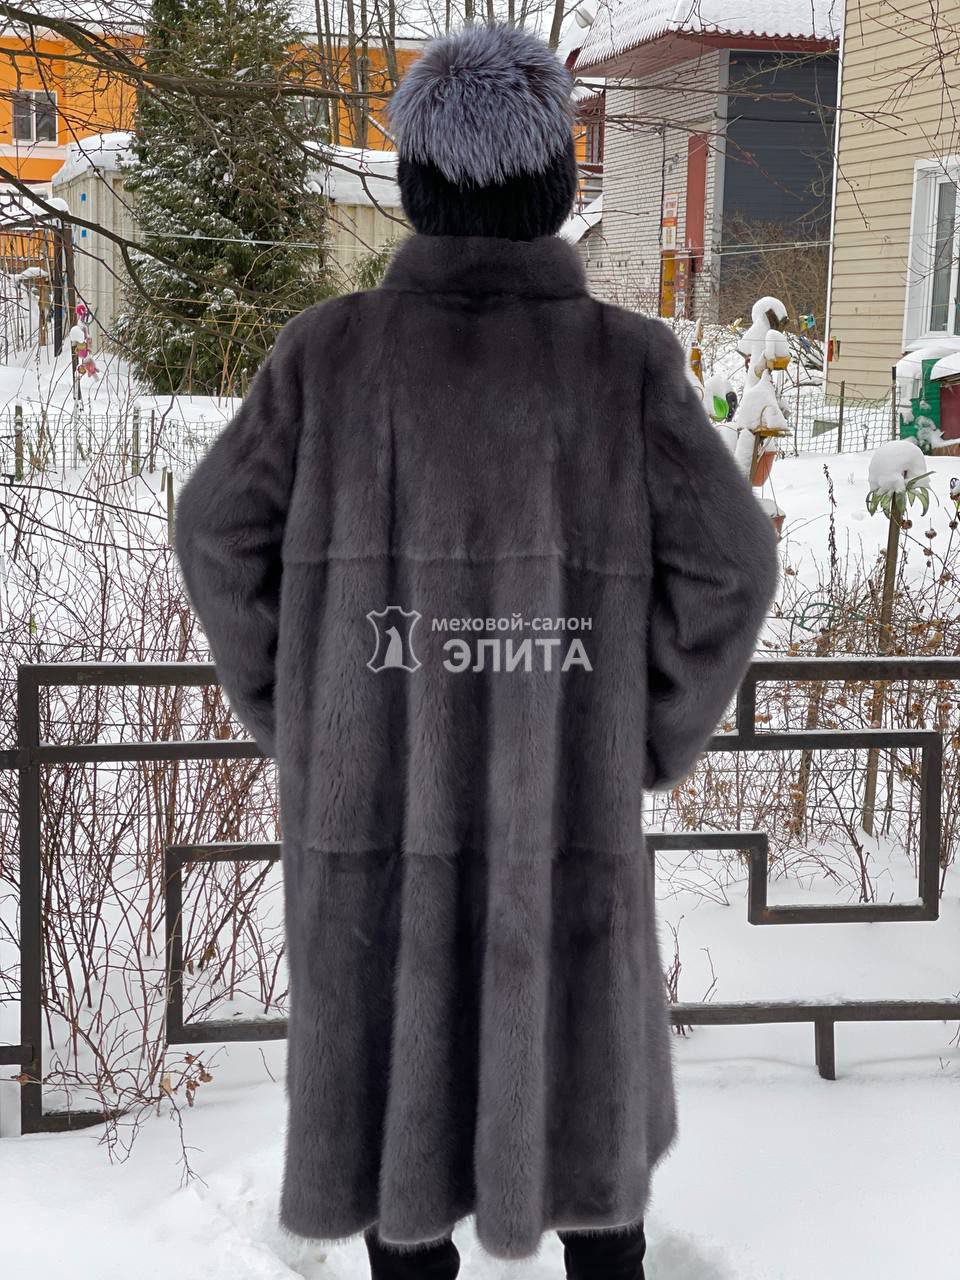 Норковая шуба S-04, р-р 48-54, цена 170600 рублей в интернет-магазине кожи и меха ЭЛИТА. Вид 2